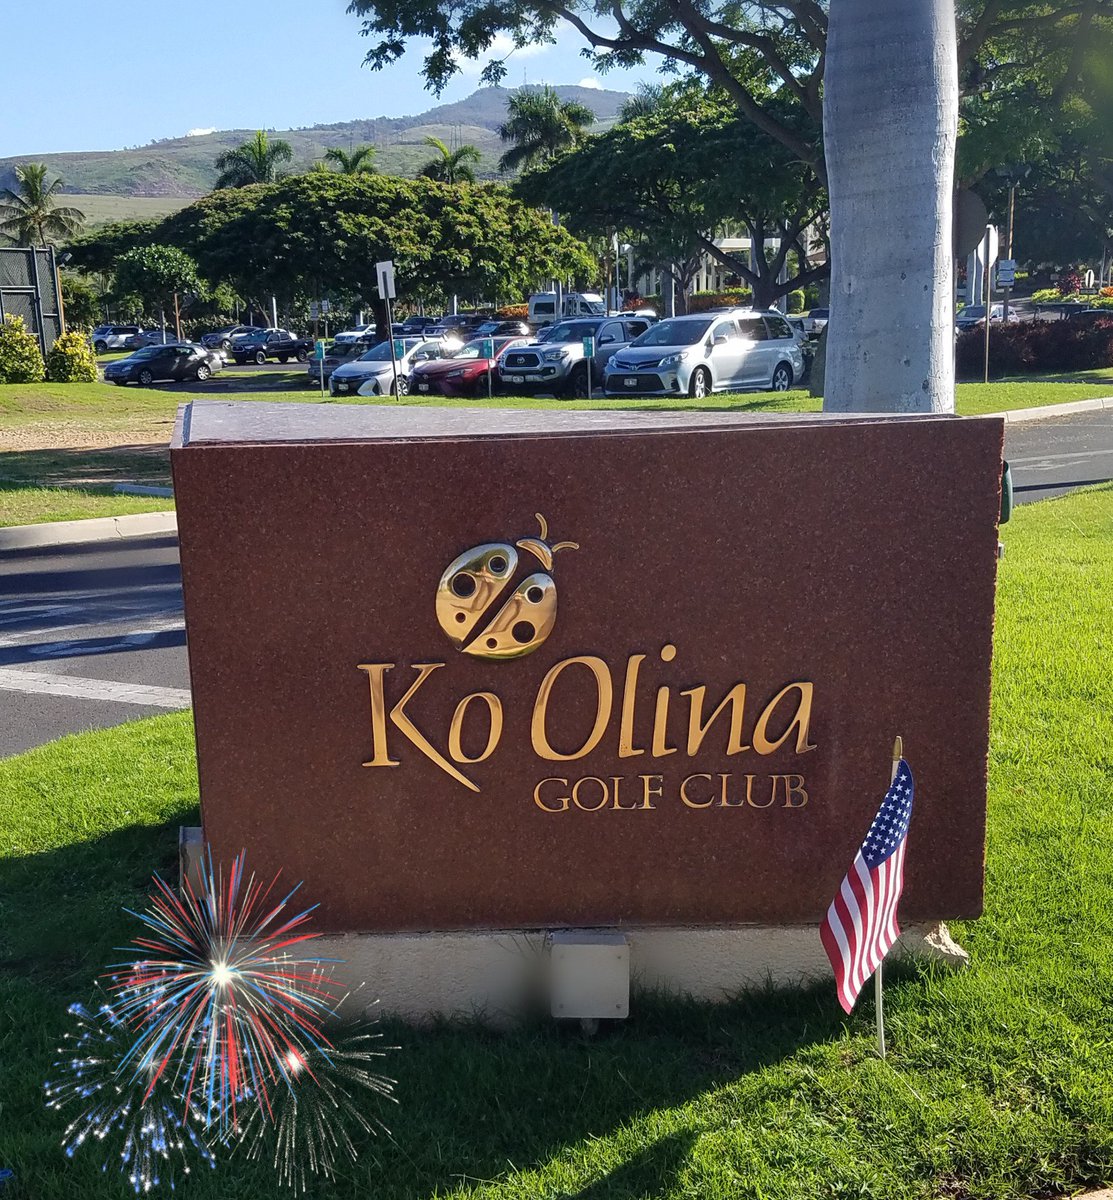 Happy 4th of July!🏌🏽‍♂️⛳ #golf #koolinagolfclub #4thofjuly #koolina #hawaiigolf #golfhawaii #holeinone #golfer #oahu #hawaii #independenceday #fireworks #americasbirthday @KoOlinaResort @KoOlinaFun